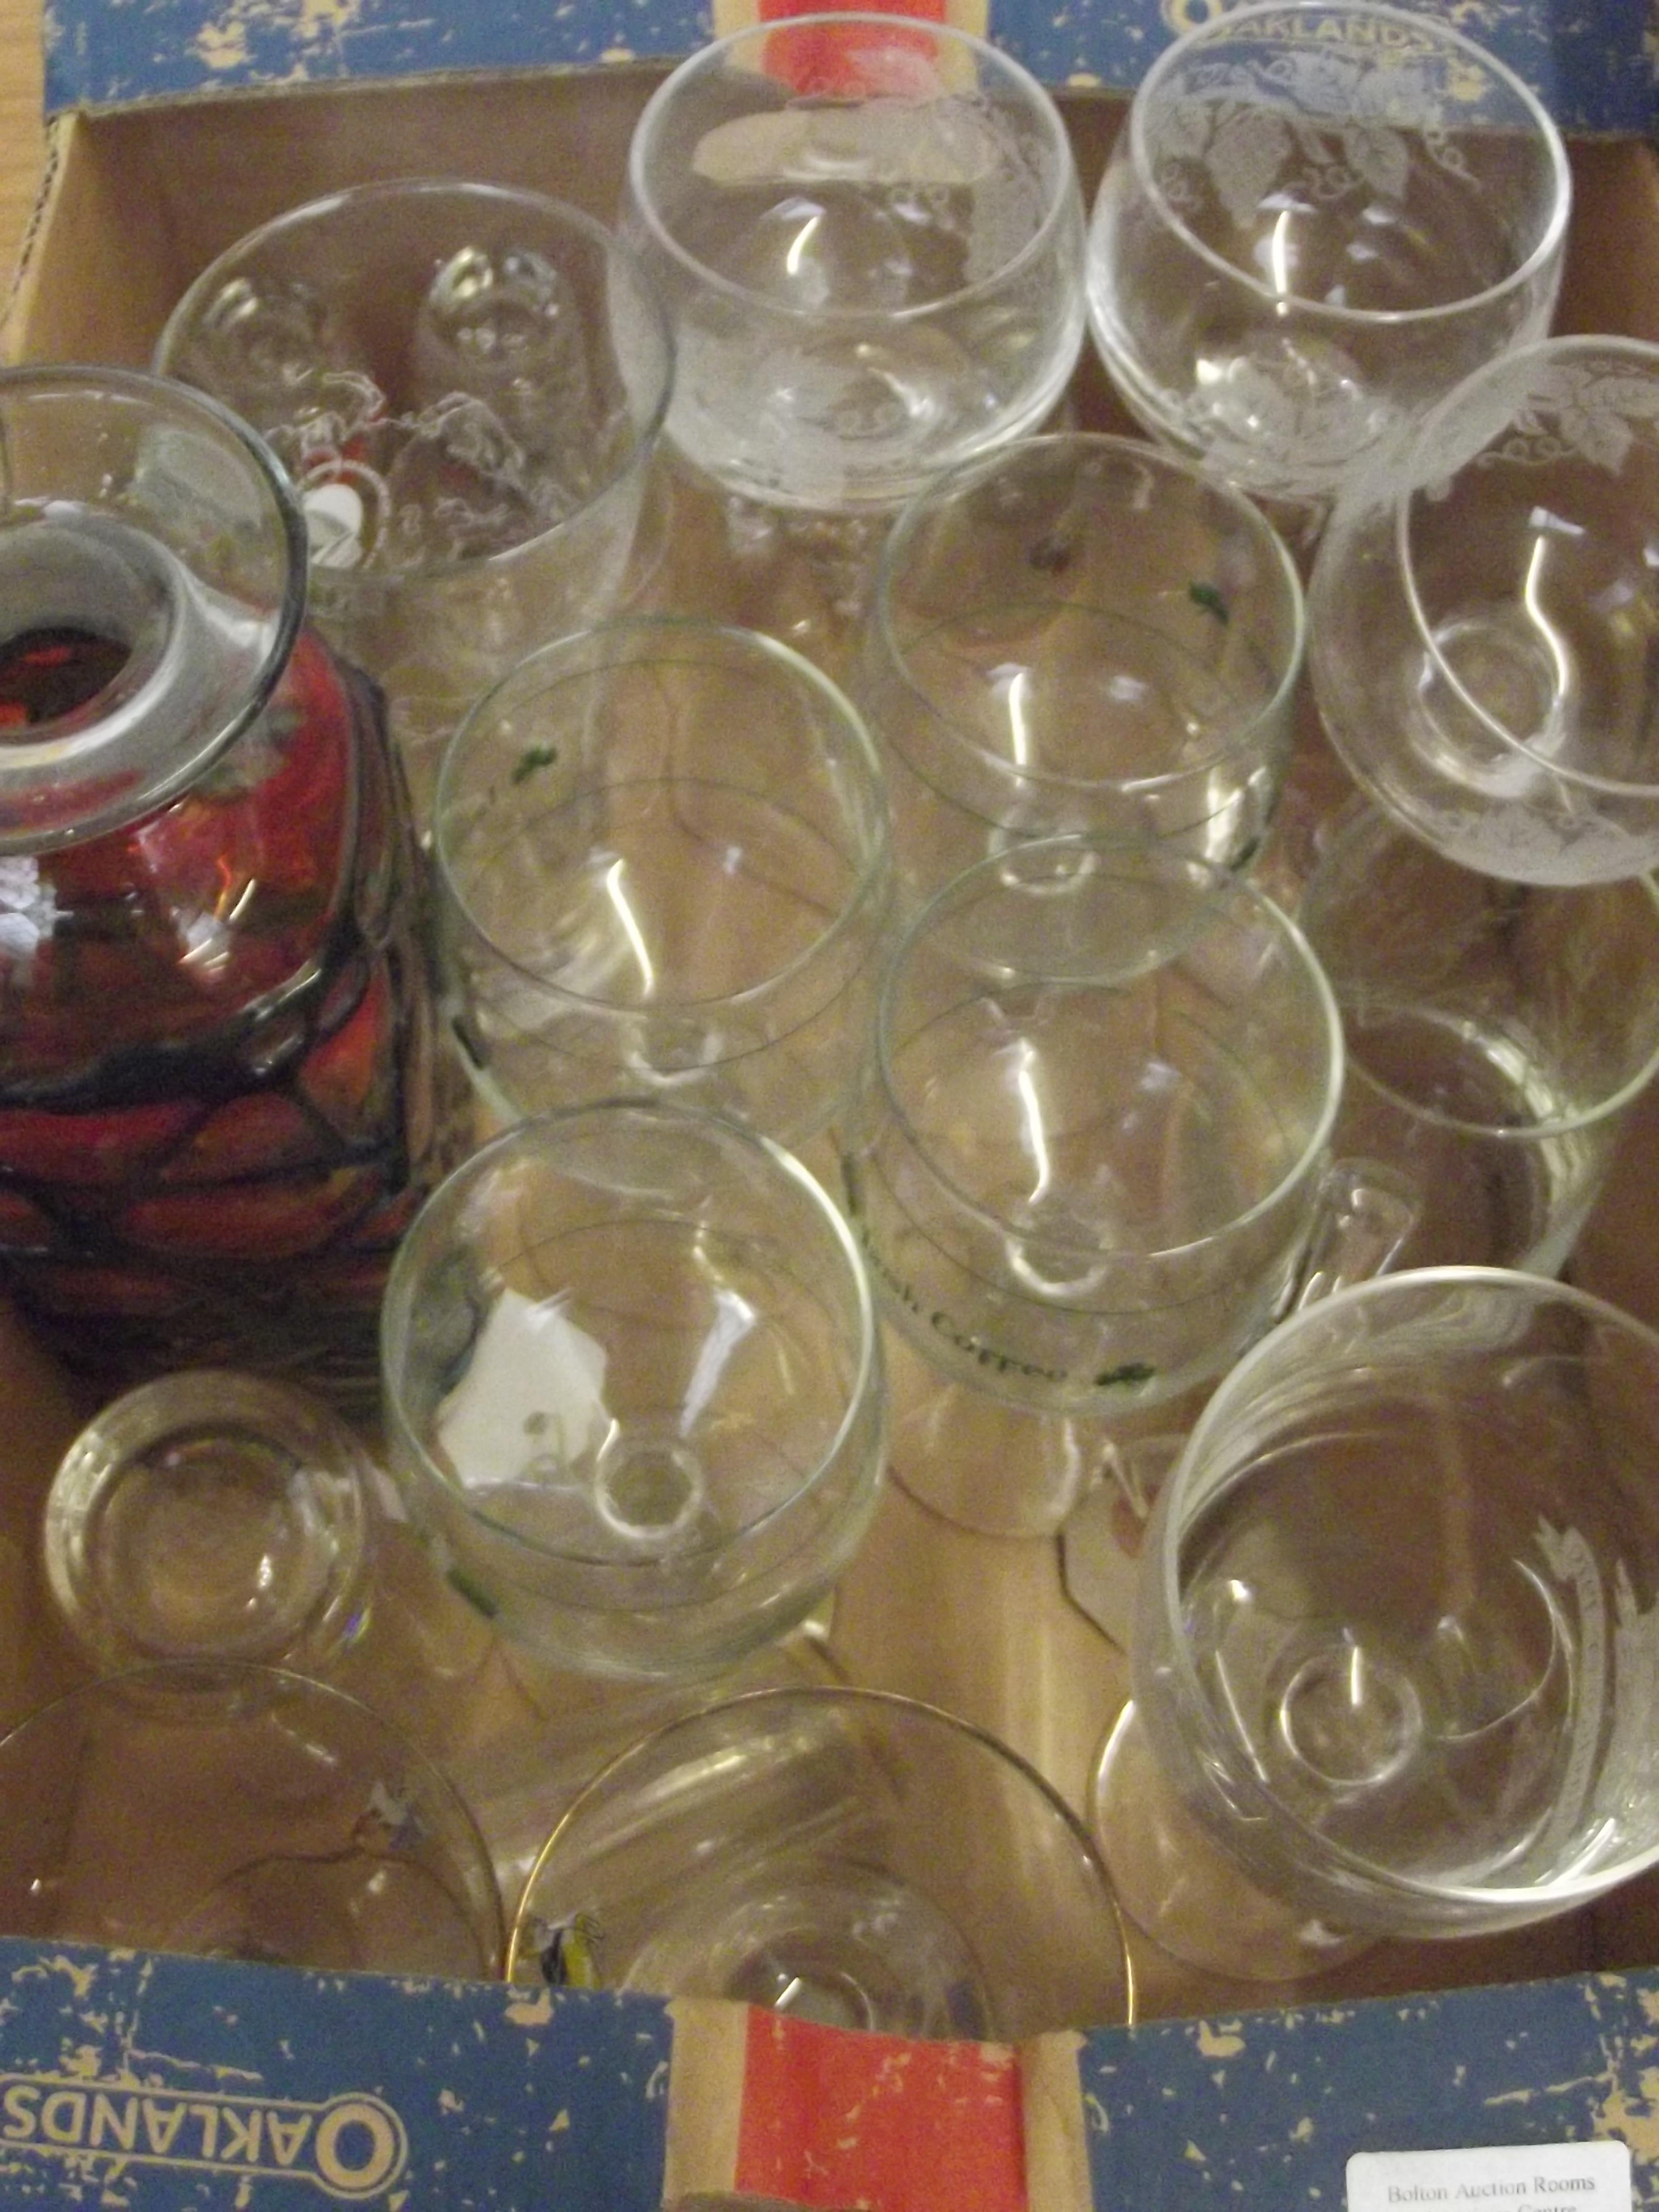 Assorted glassware to include commemorative ware